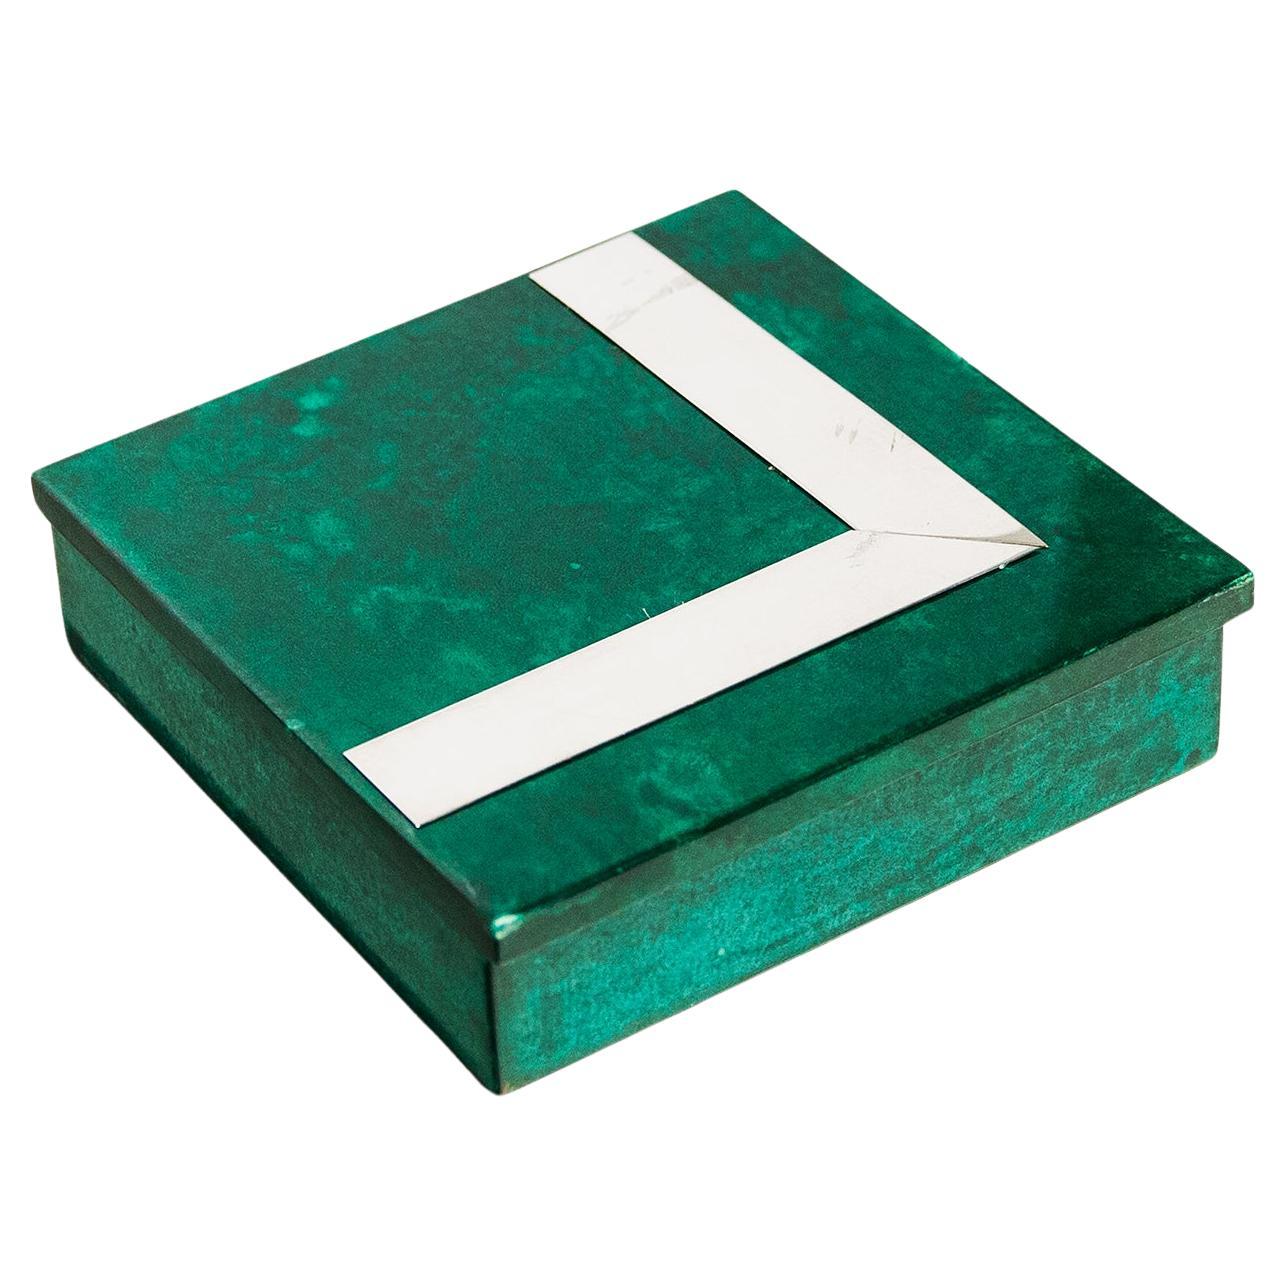 Aldo Tura Green Goatskin Chrome Box